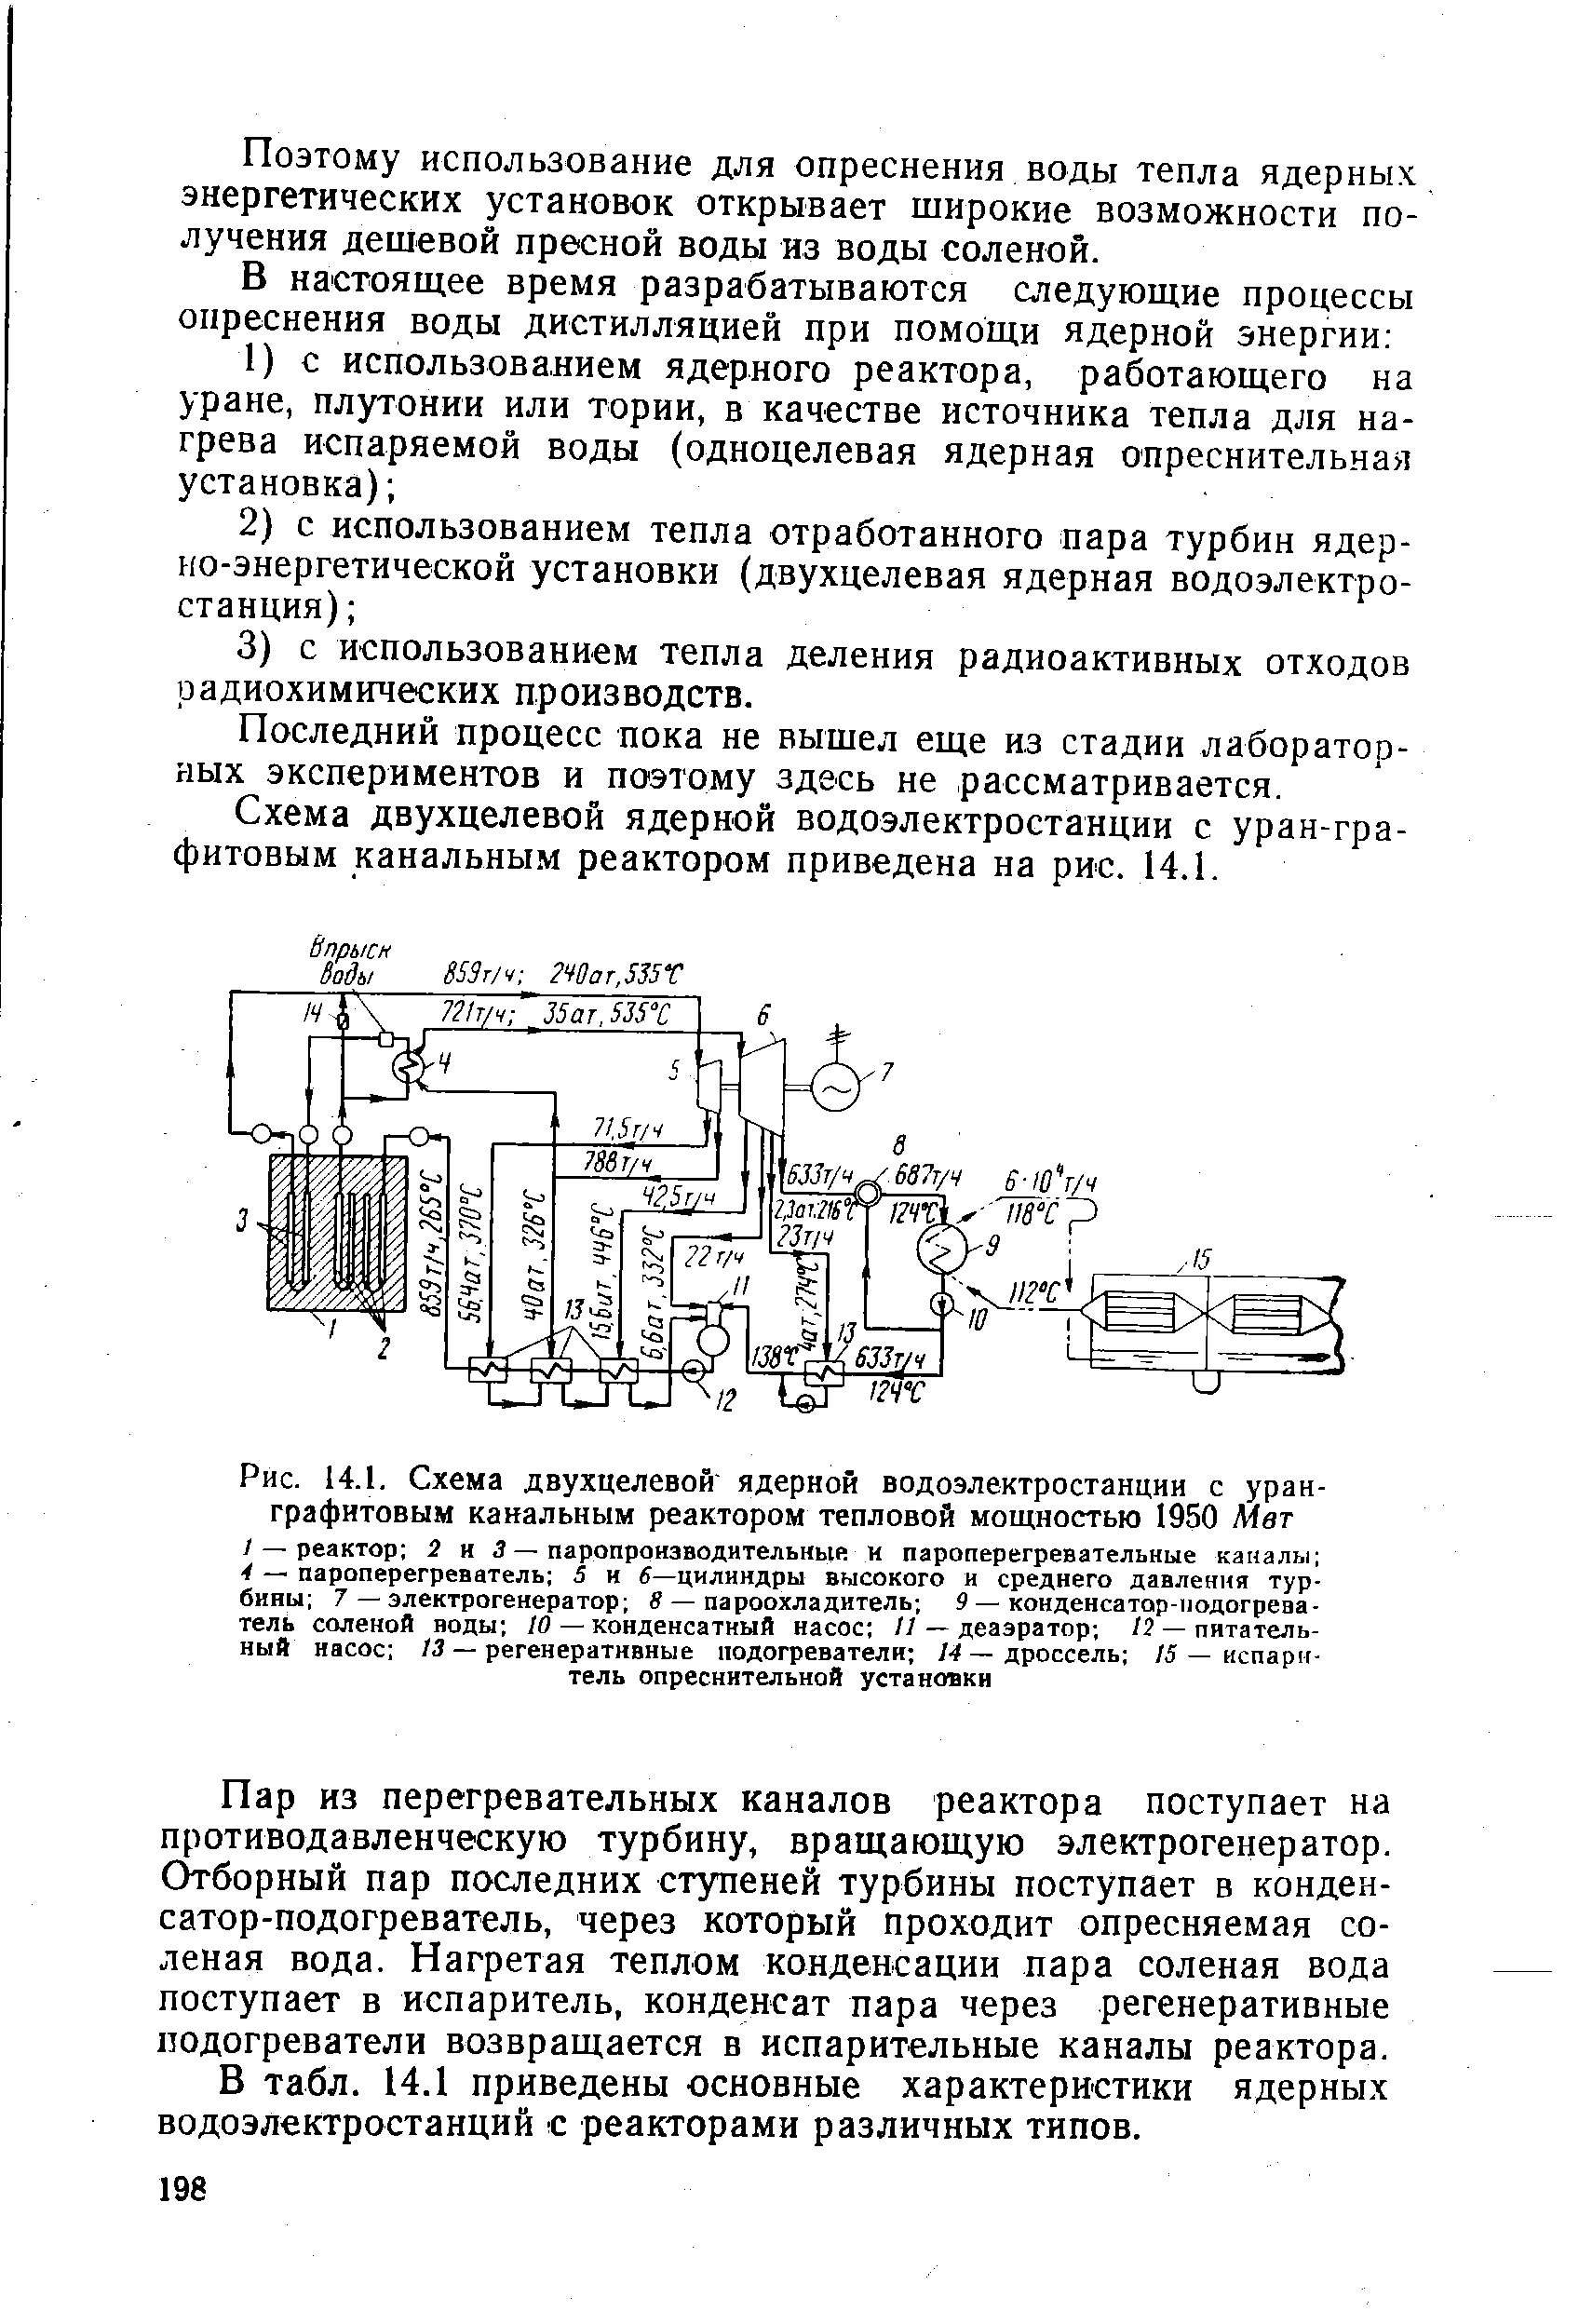 Рис. 14.1. Схема двухцелевой ядерной водоэлектростанции с уран-графитовым канальным <a href="/info/13829">реактором тепловой</a> мощностью 1950 Мет
